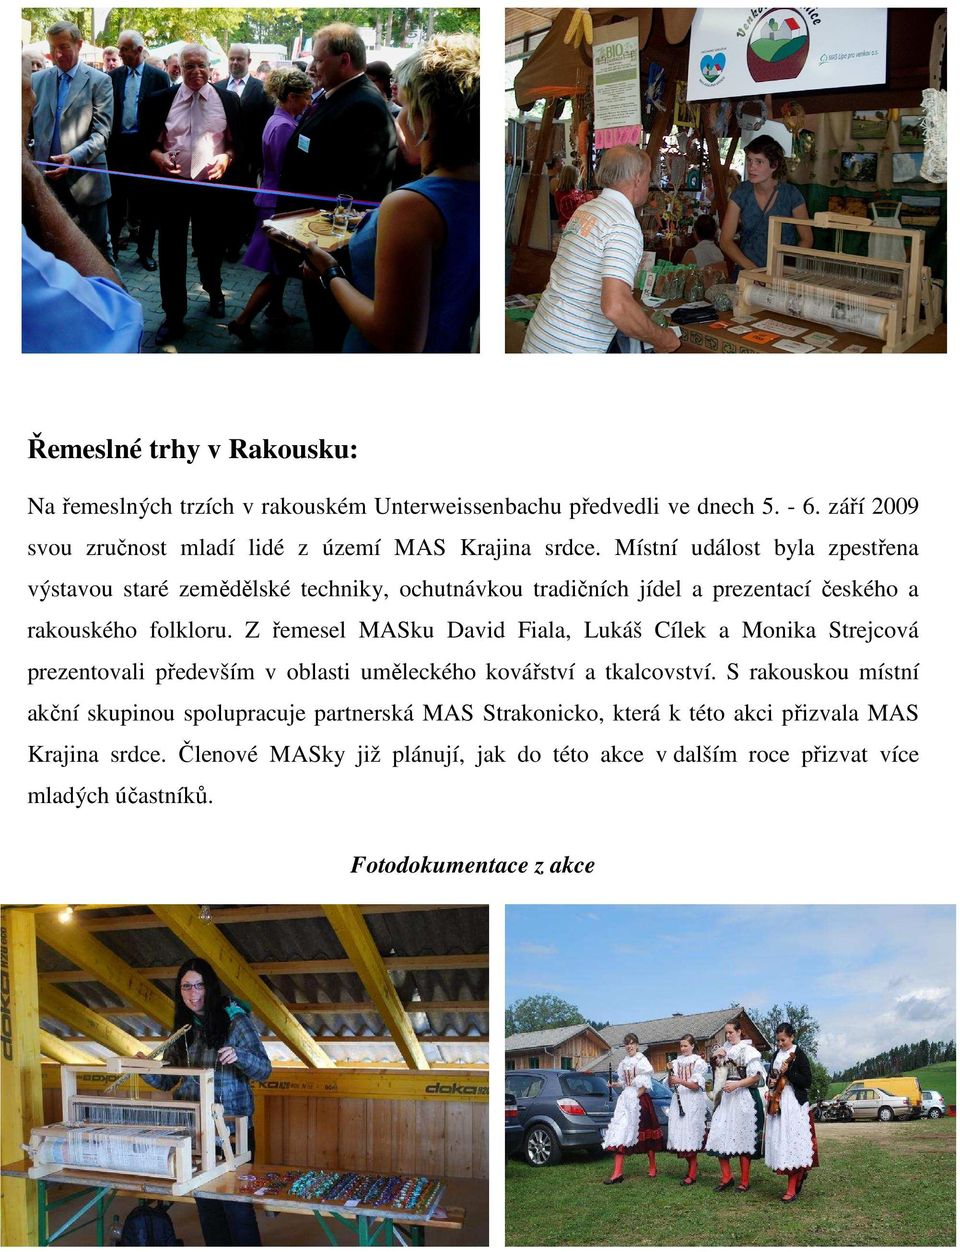 Z řemesel MASku David Fiala, Lukáš Cílek a Monika Strejcová prezentovali především v oblasti uměleckého kovářství a tkalcovství.